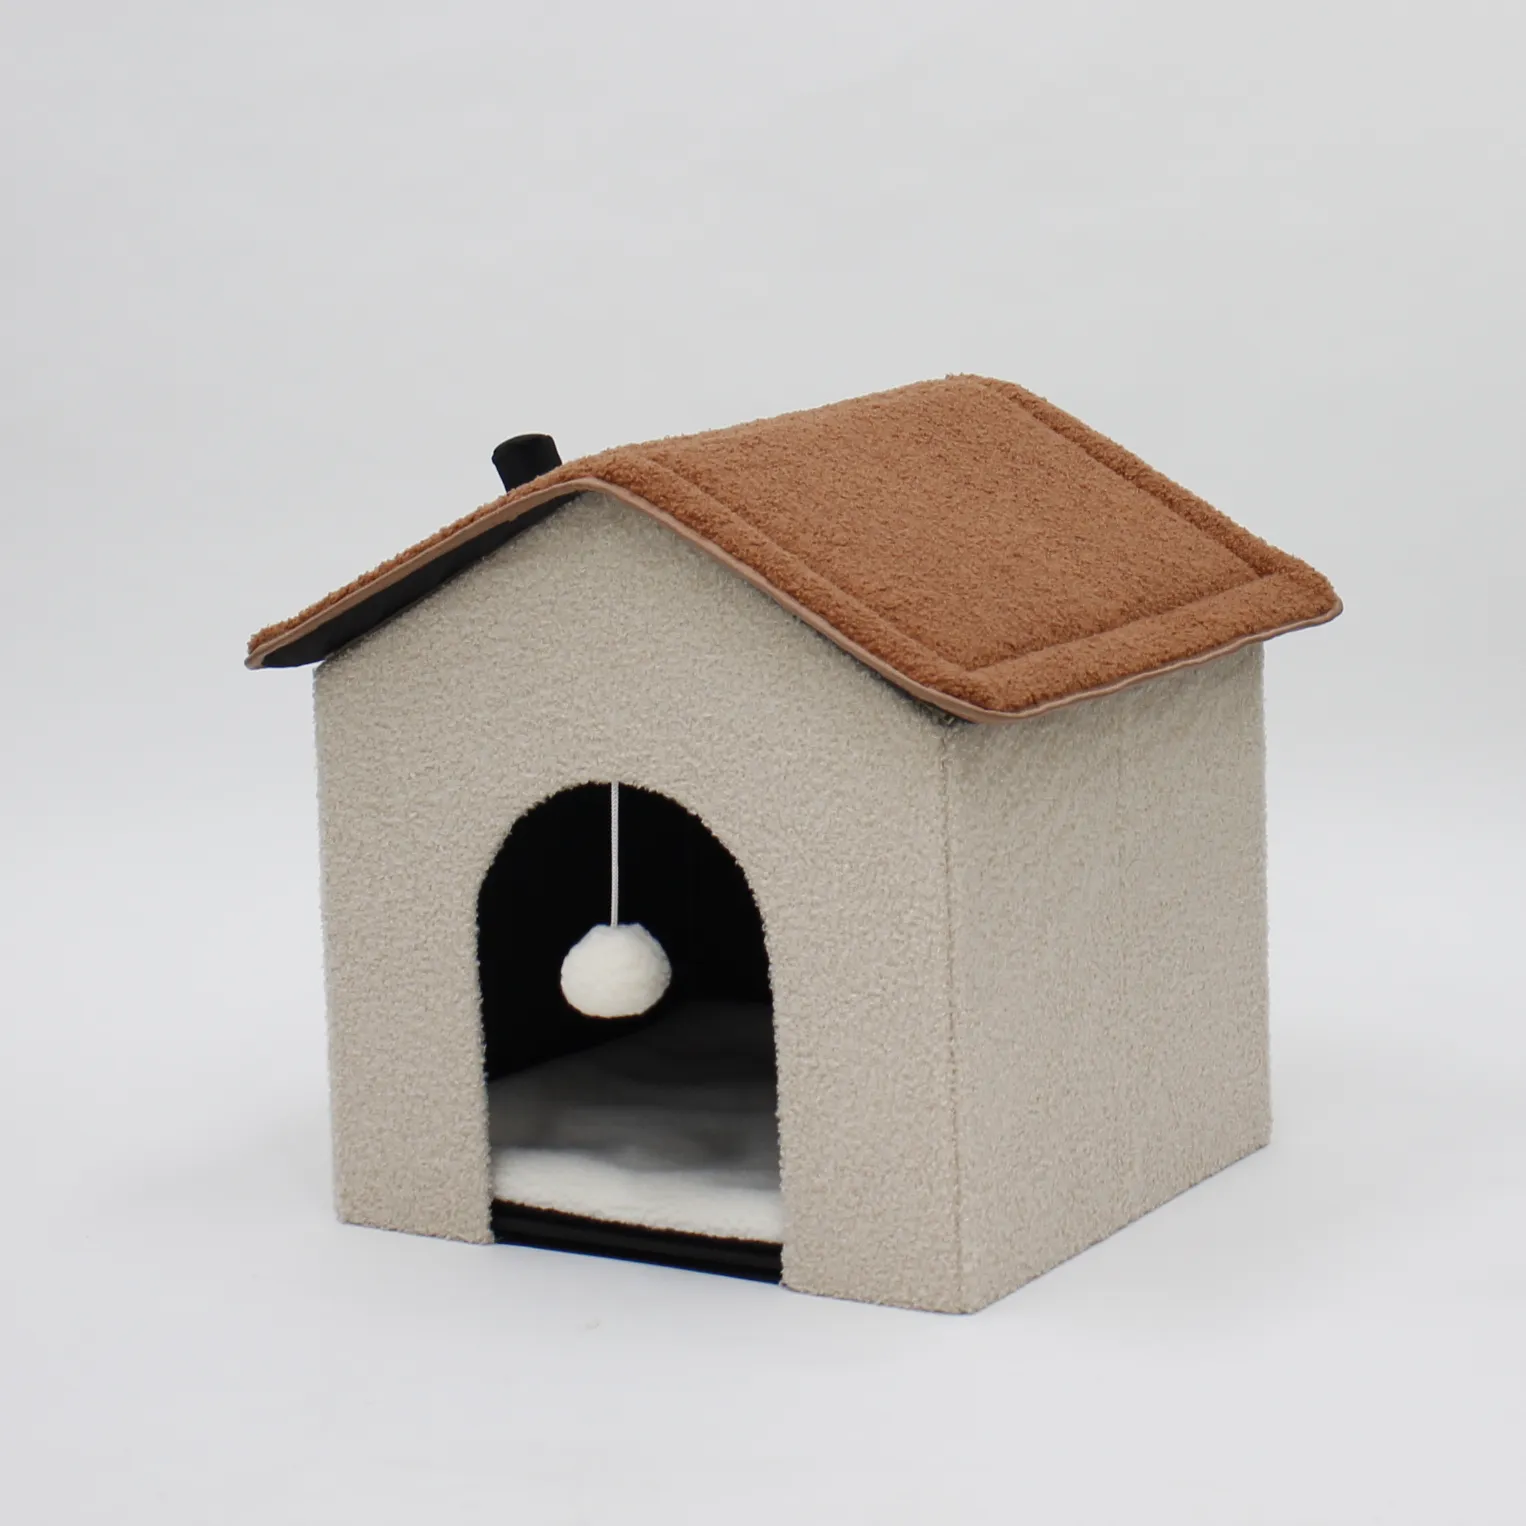 جديد تصميم الساخن بيع المنزلية الصغيرة داخلي طوي الحيوانات الأليفة برج للقط هرش سرير البيت